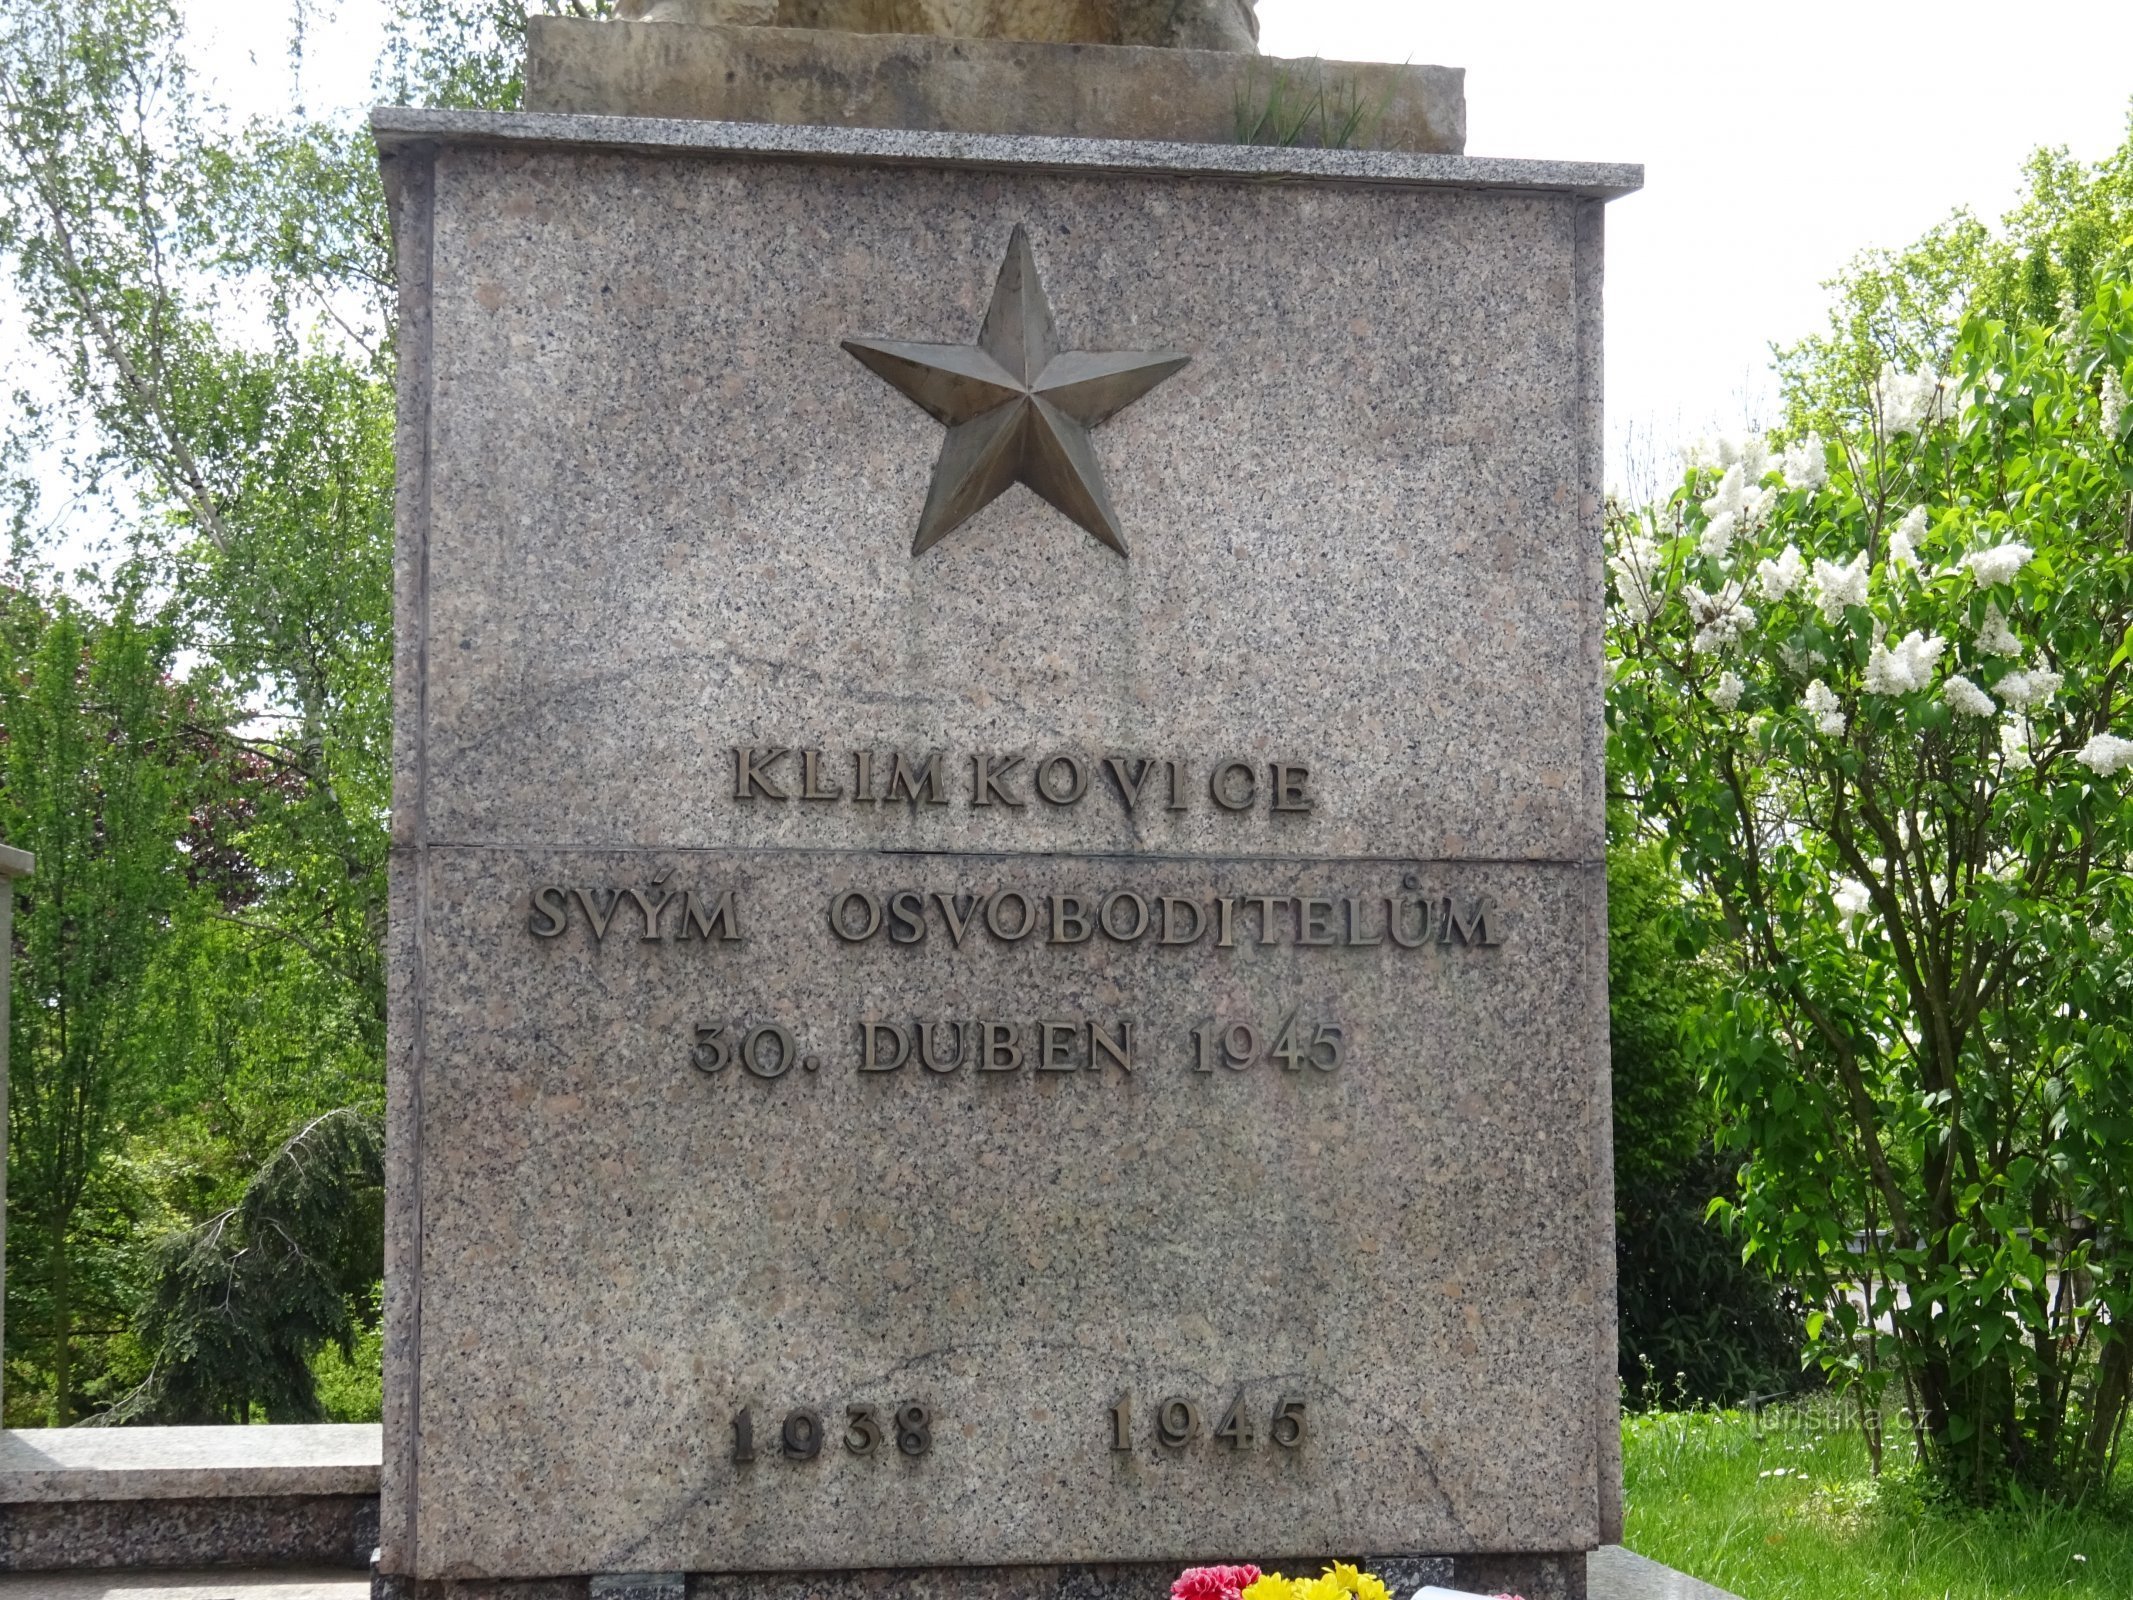 Klimkovice - spomenik II. svjetski.ratovi